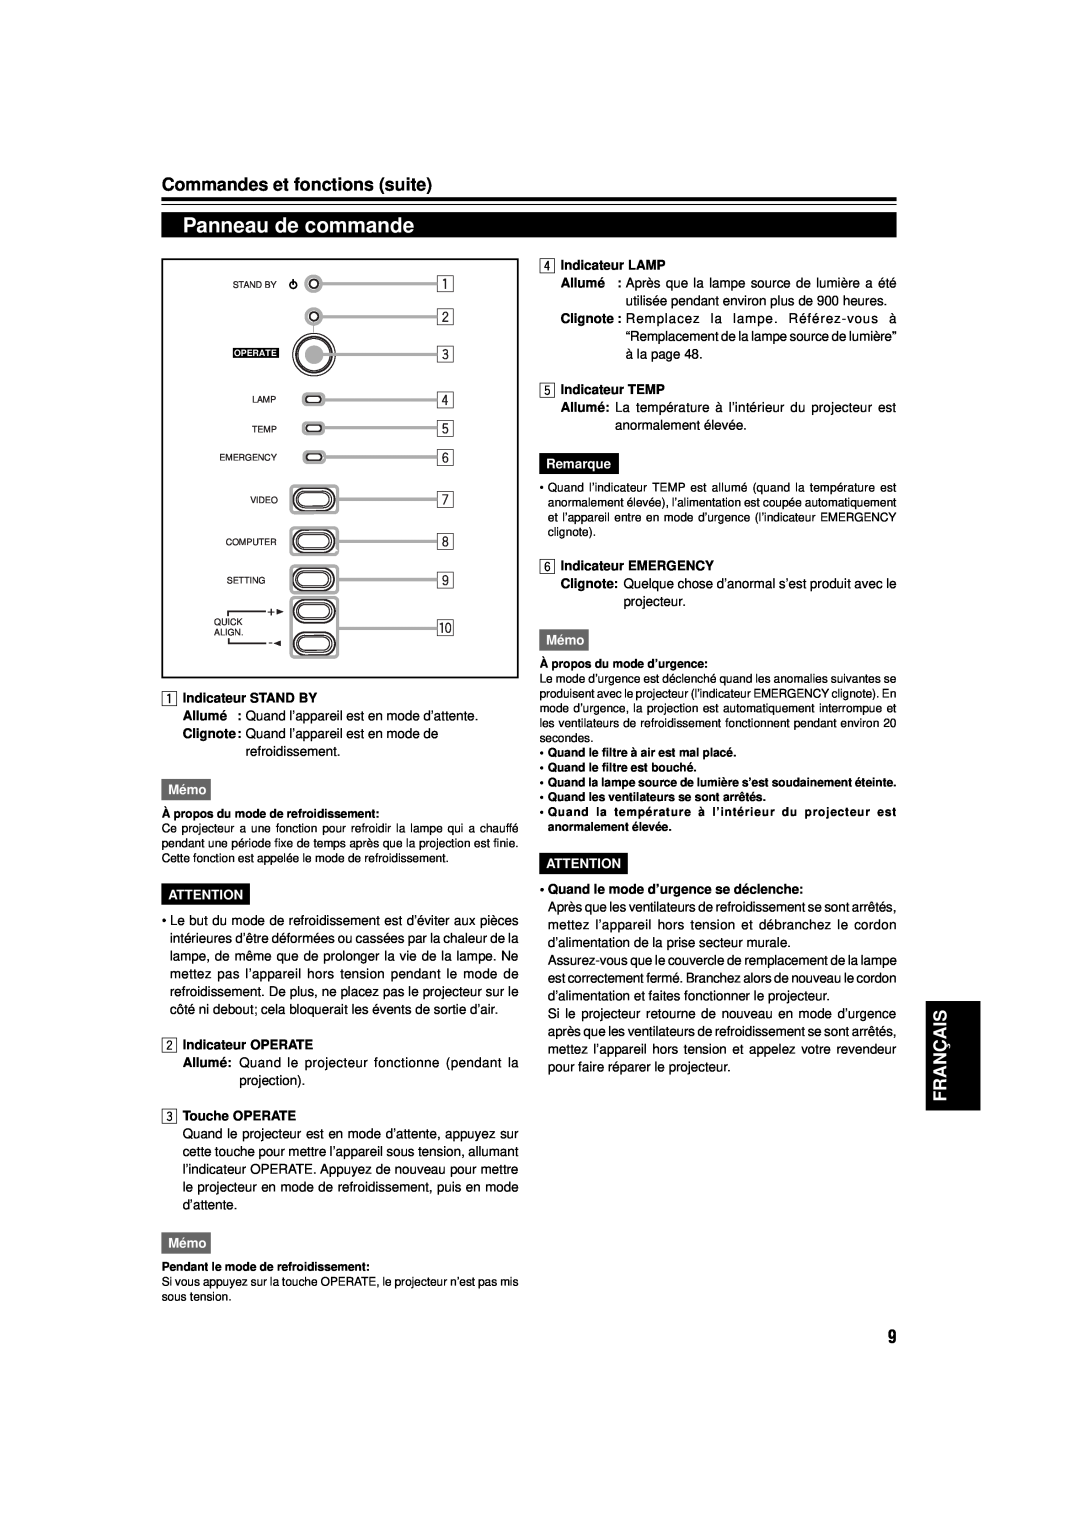 JVC DLA-M15U Panneau de commande, Commandes et fonctions suite, Français, Indicateur STAND BY, Mémo, Indicateur OPERATE 